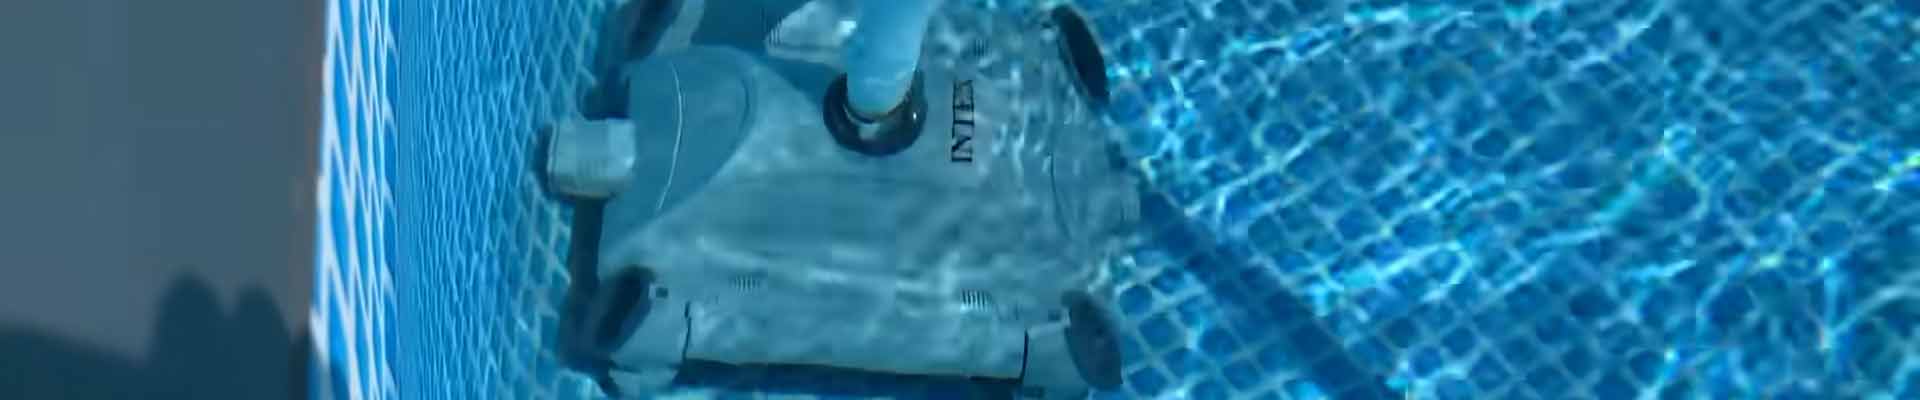 INTEX-pool-vacuum